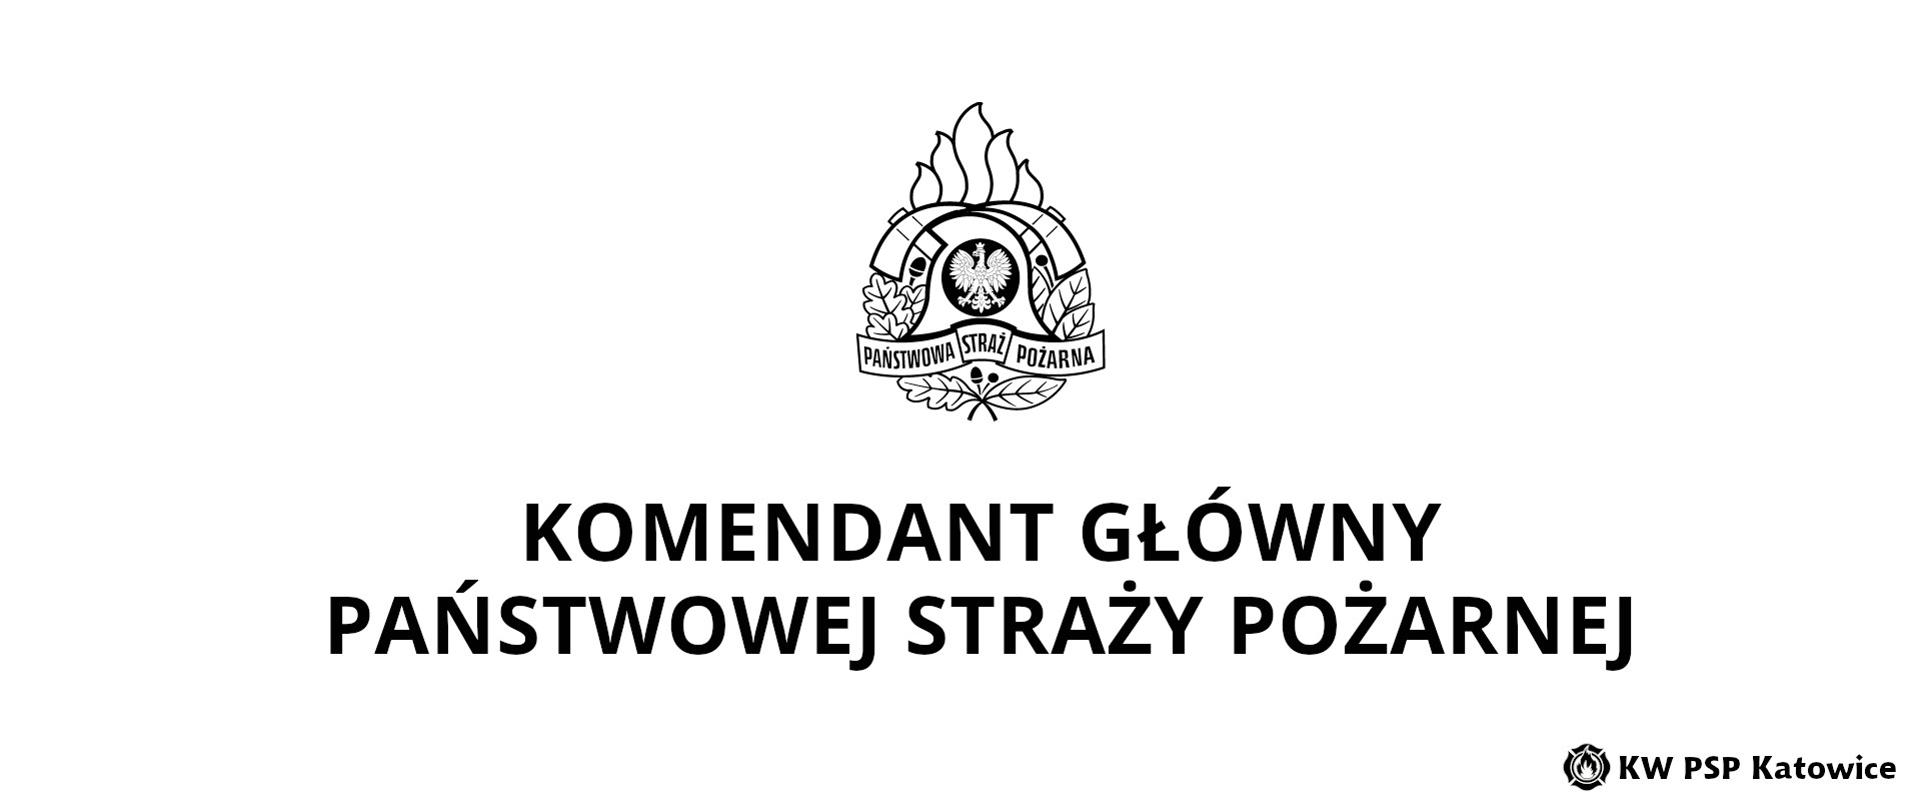 Ilustracja przedstawia na białym tle, na środku u góry czarno-biały logotyp Państwowej Straży Pożarnej. Poniżej napis Komendant Główny Państwowej Straży Pożarnej. w prawym dolnym rogu napis KW PSP Katowice